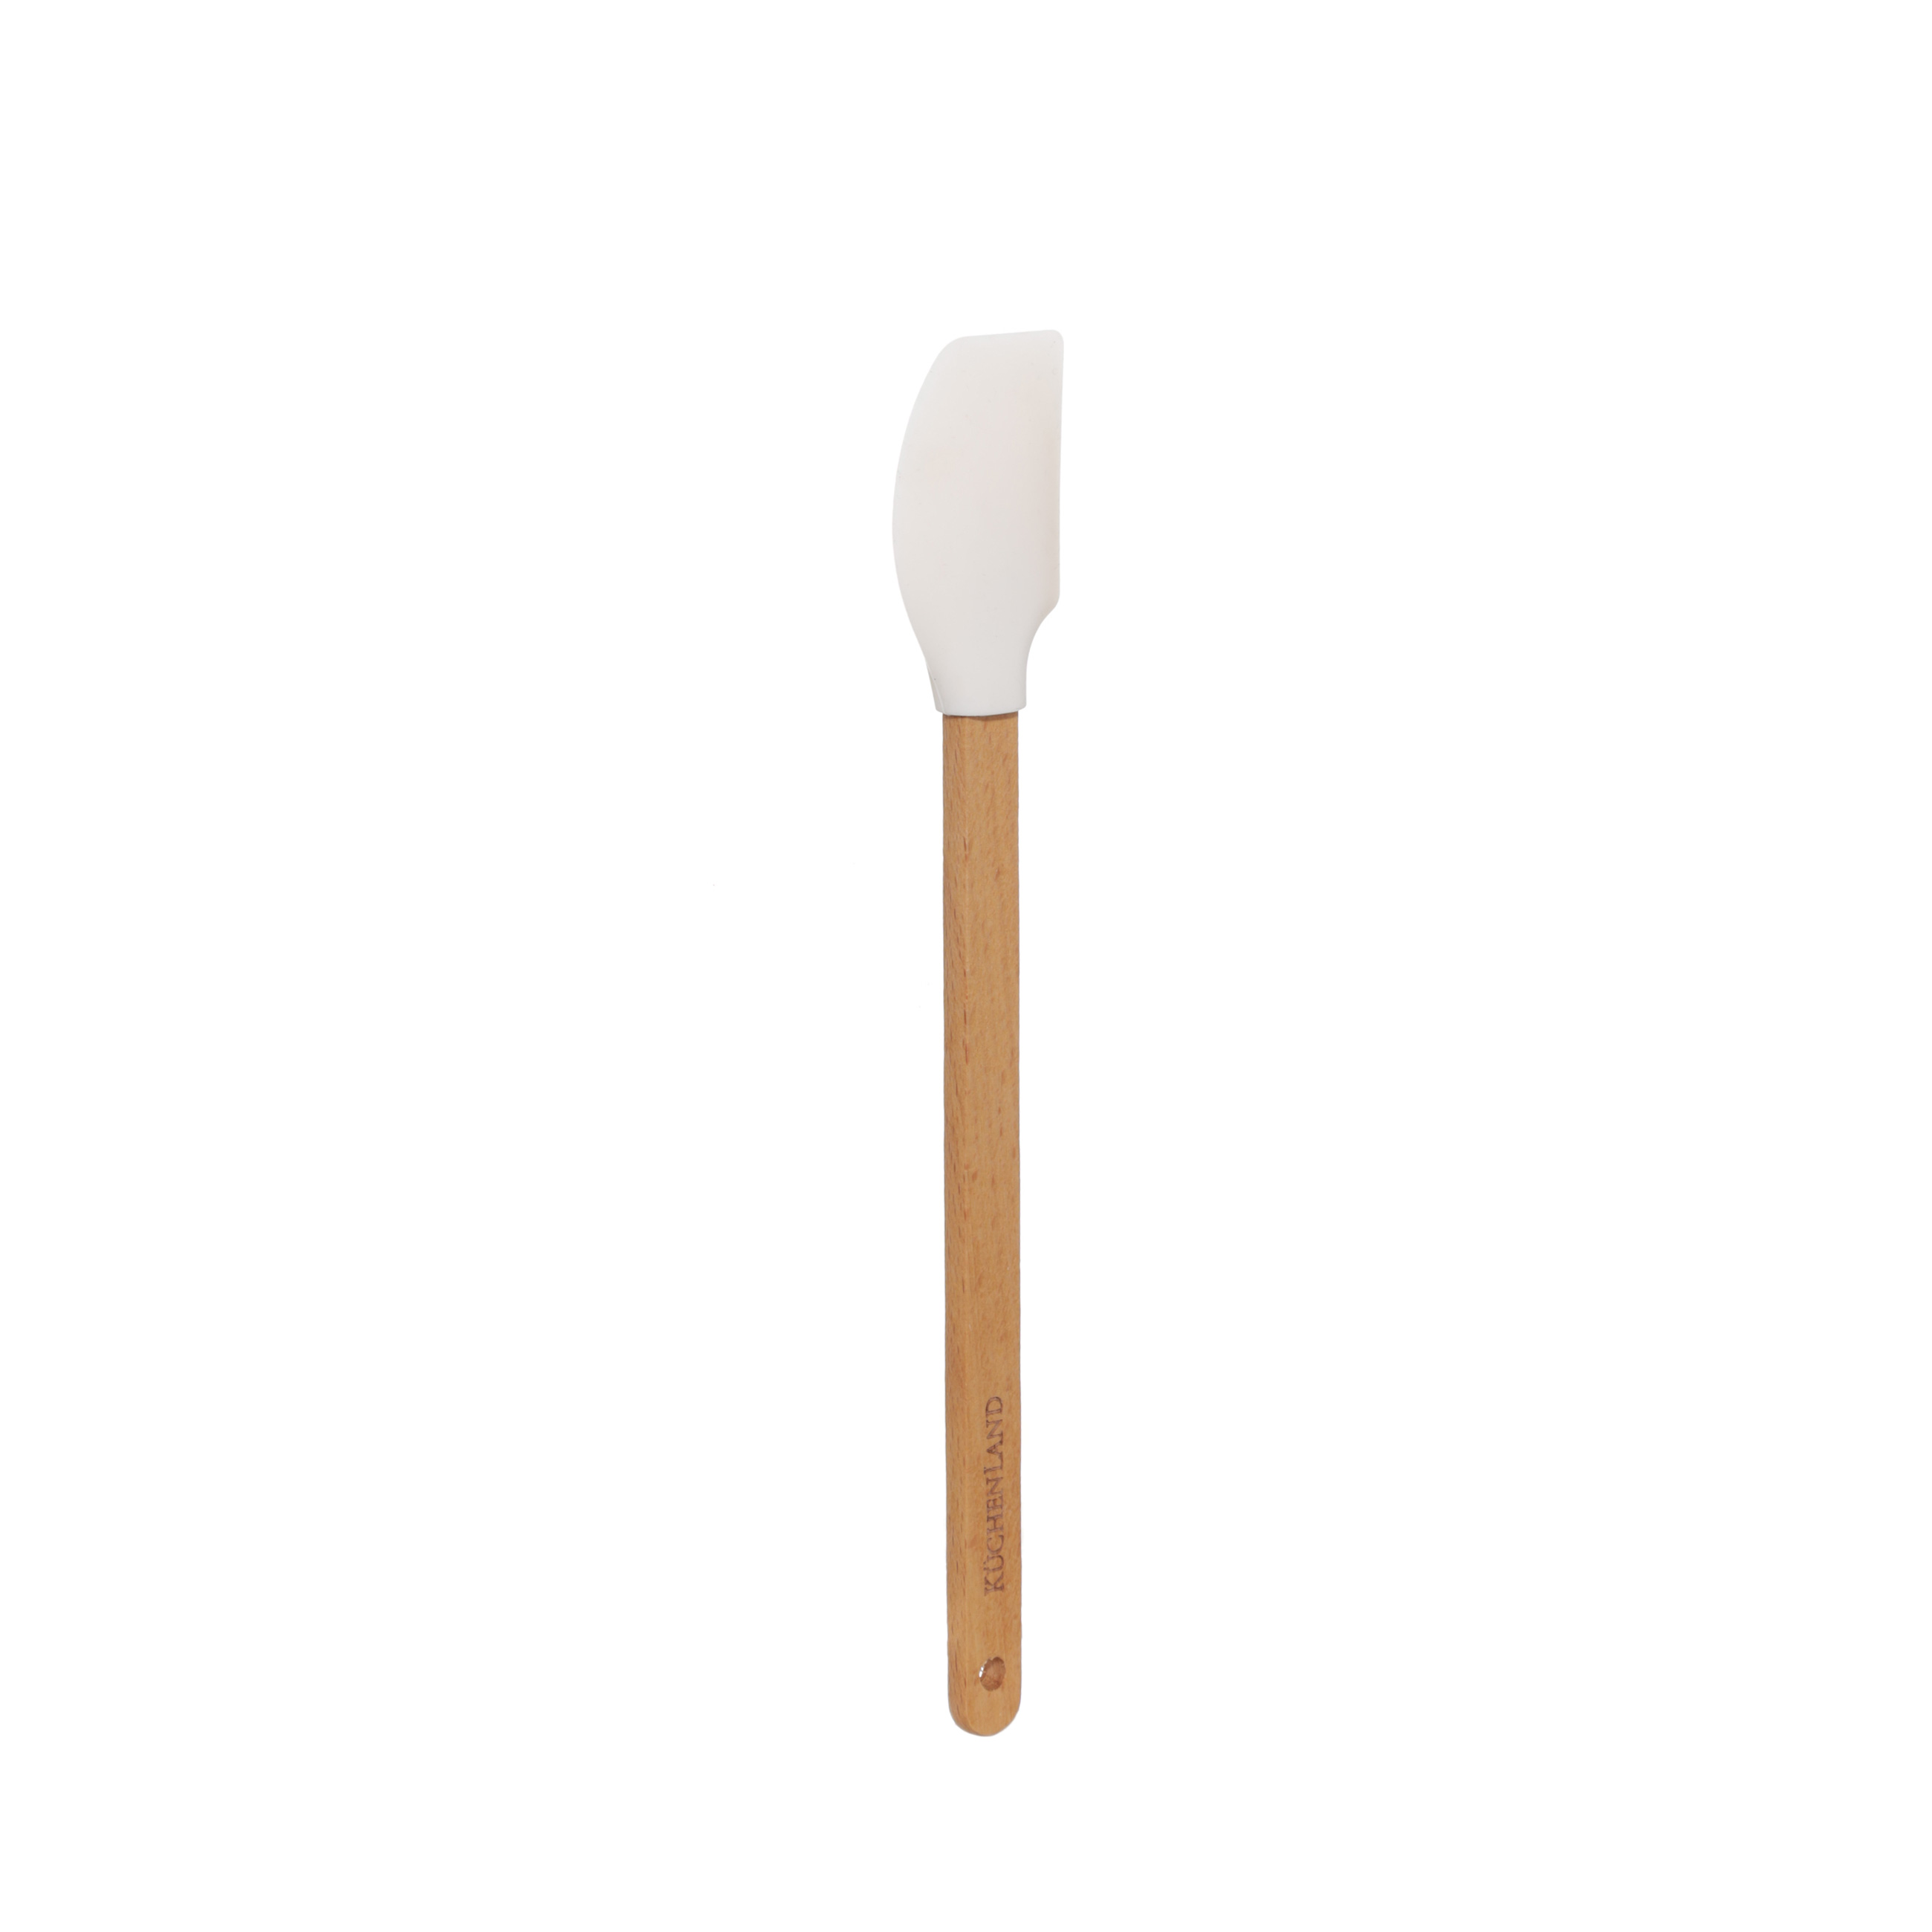 Лопатка-шпатель, 2 шт, силикон/дерево, молочная/серо-коричневая, Bakery wood изображение № 3